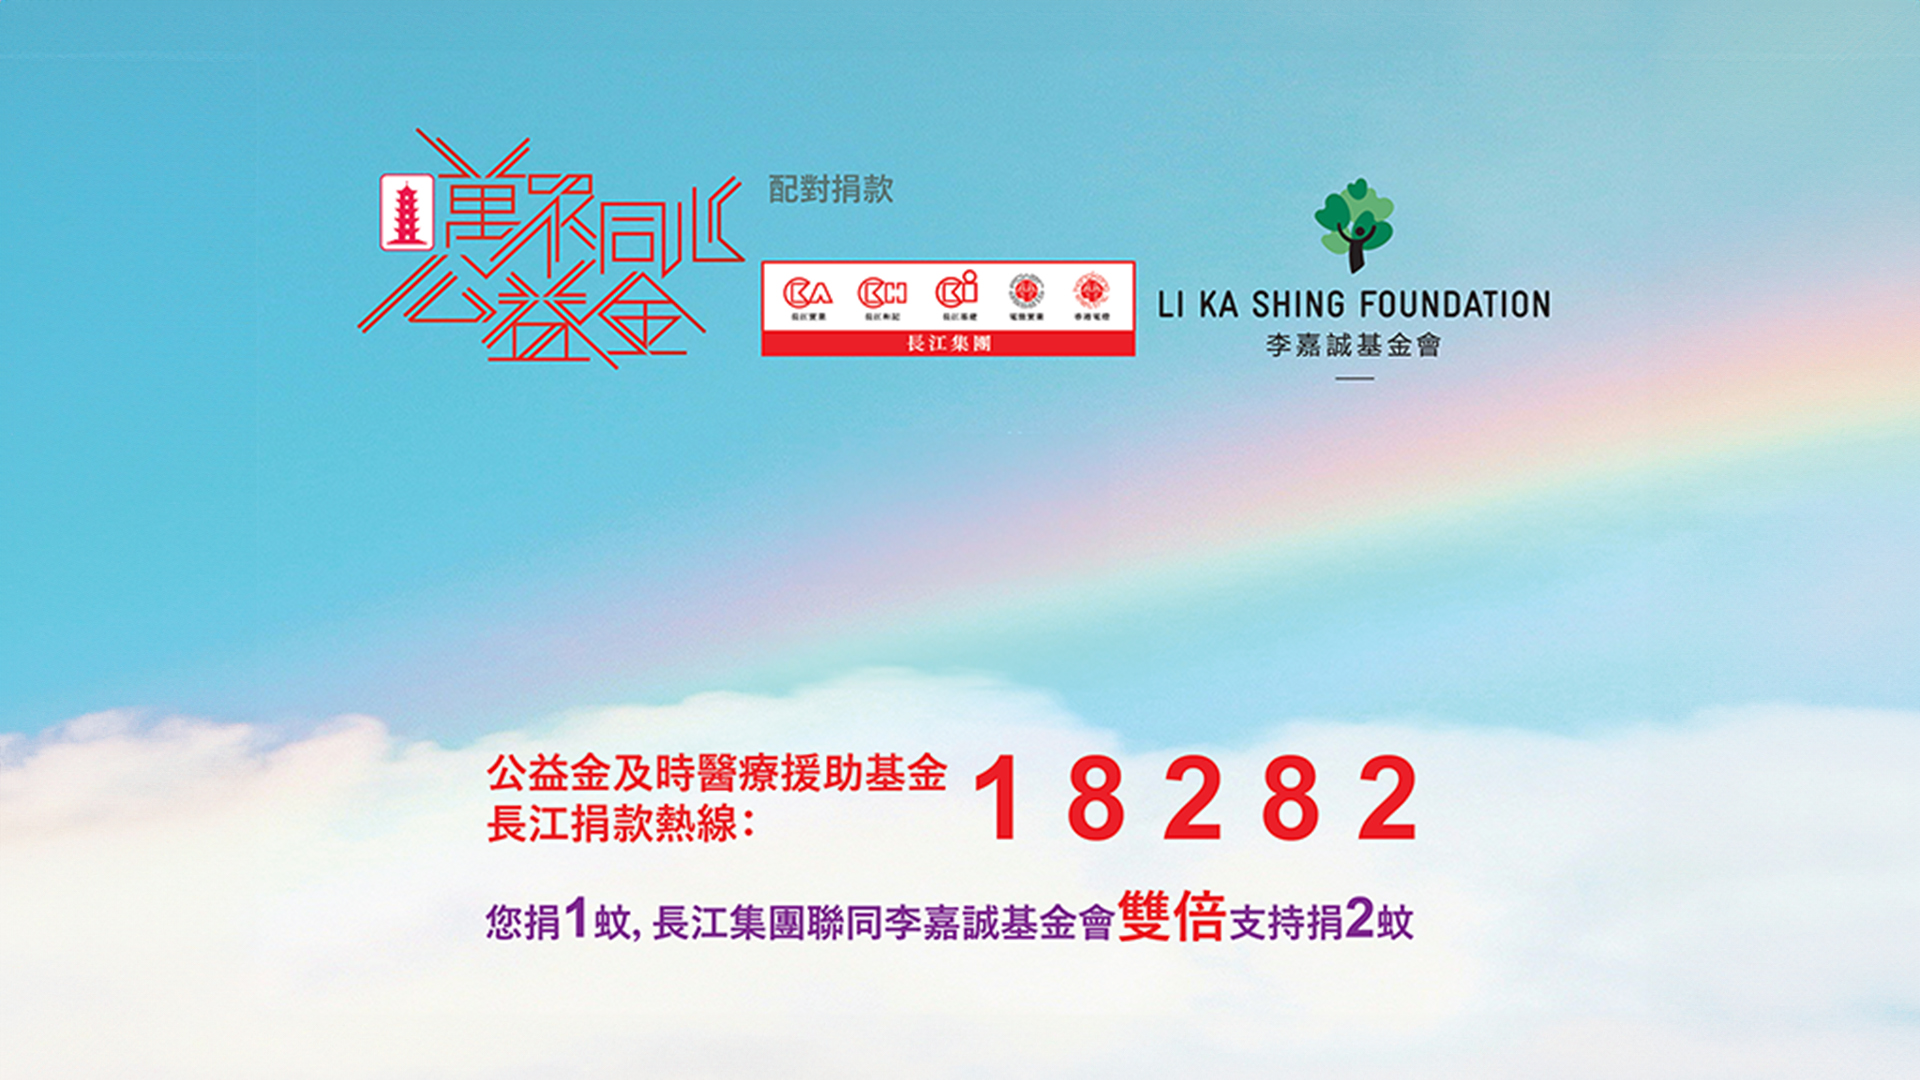 長江捐款熱線周六啟動為公益金籌款